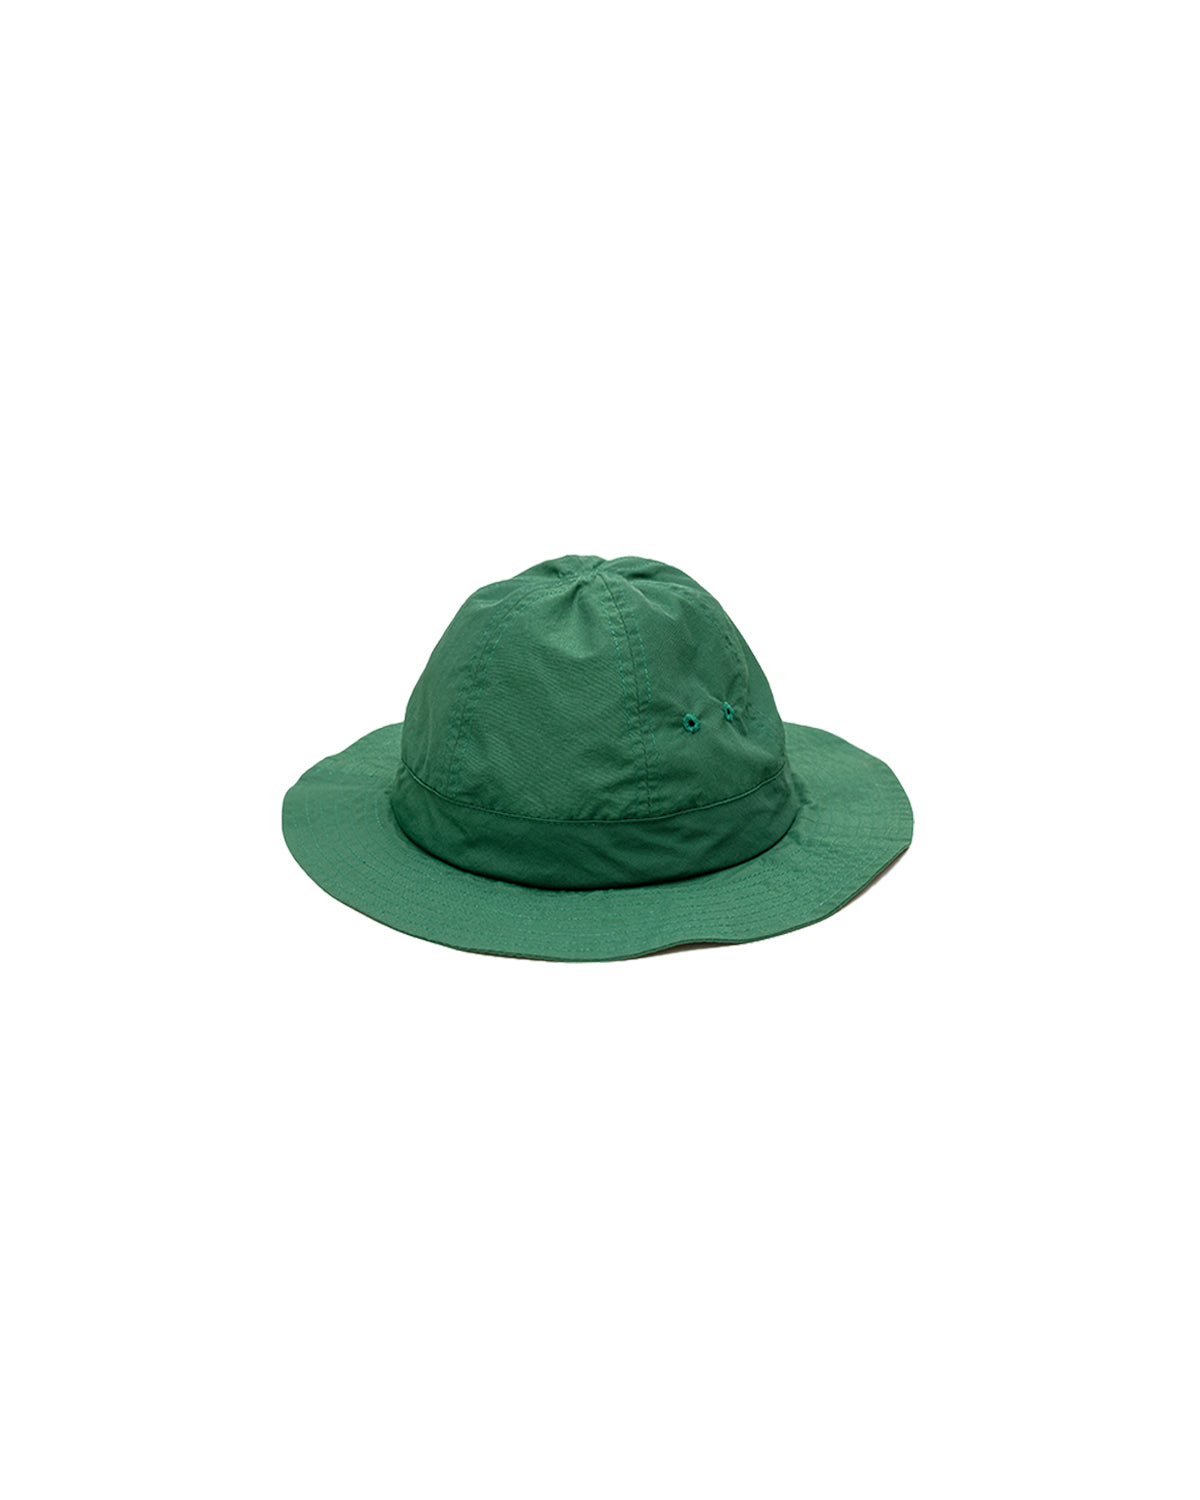 Bell Cap - Clover Green